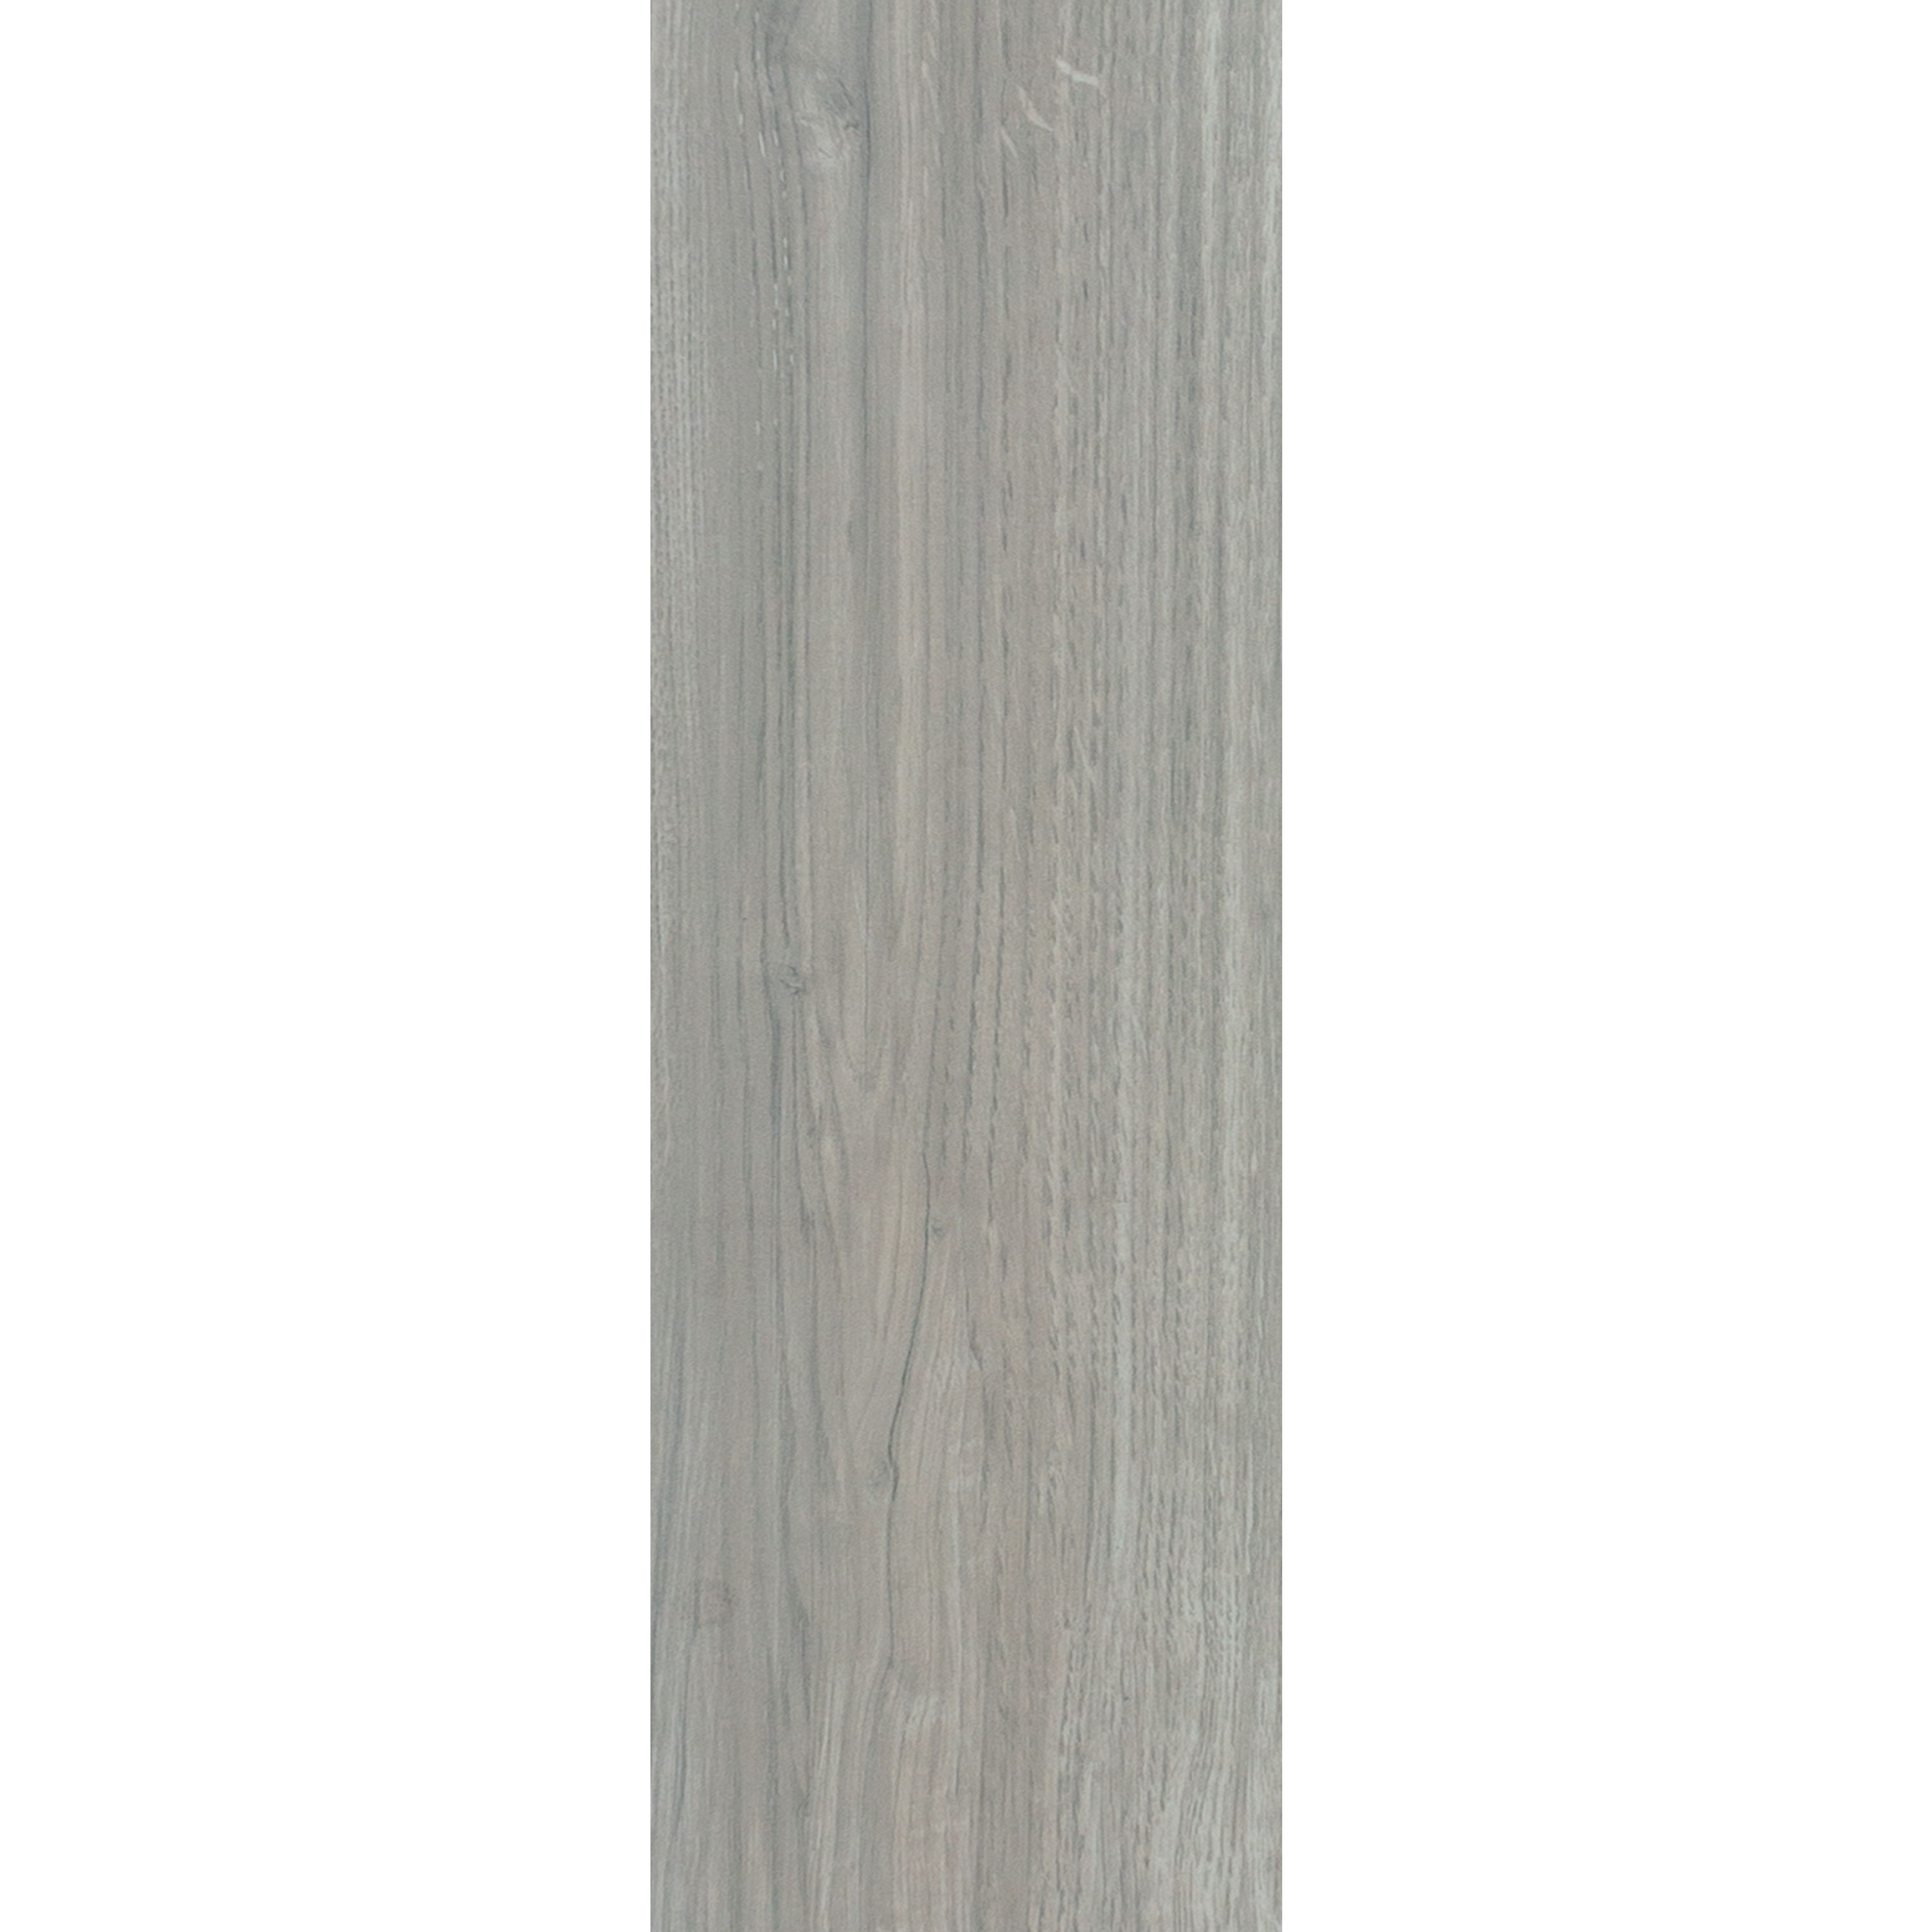 Gulvfliser Imiteret Træ Fullwood Beige 20x120cm 